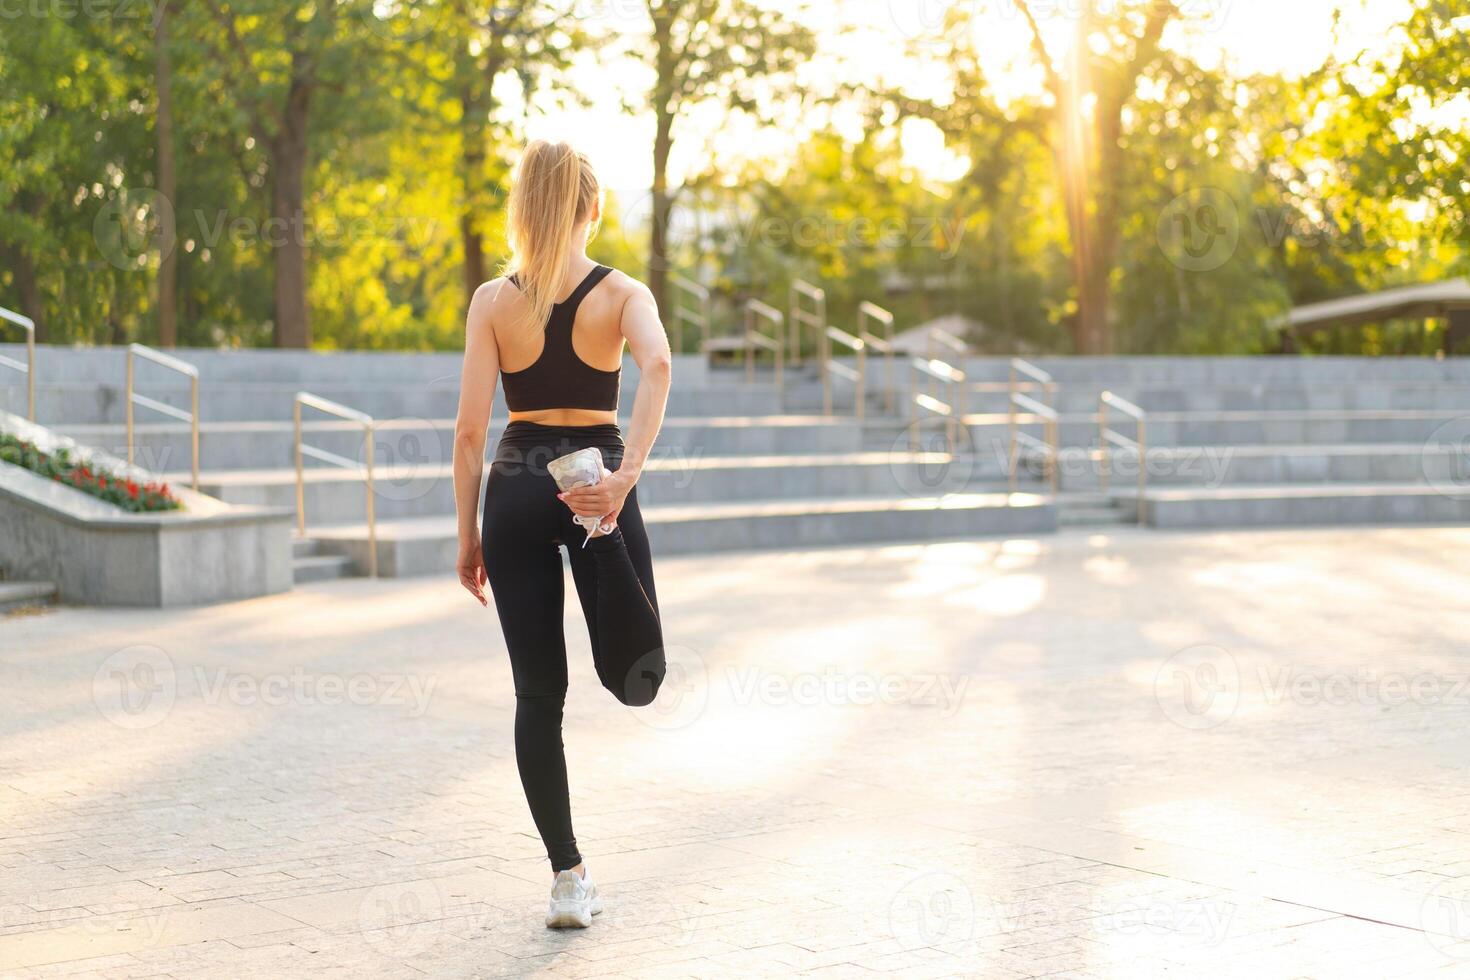 femme coureur élongation jambes avant exercice été parc Matin photo